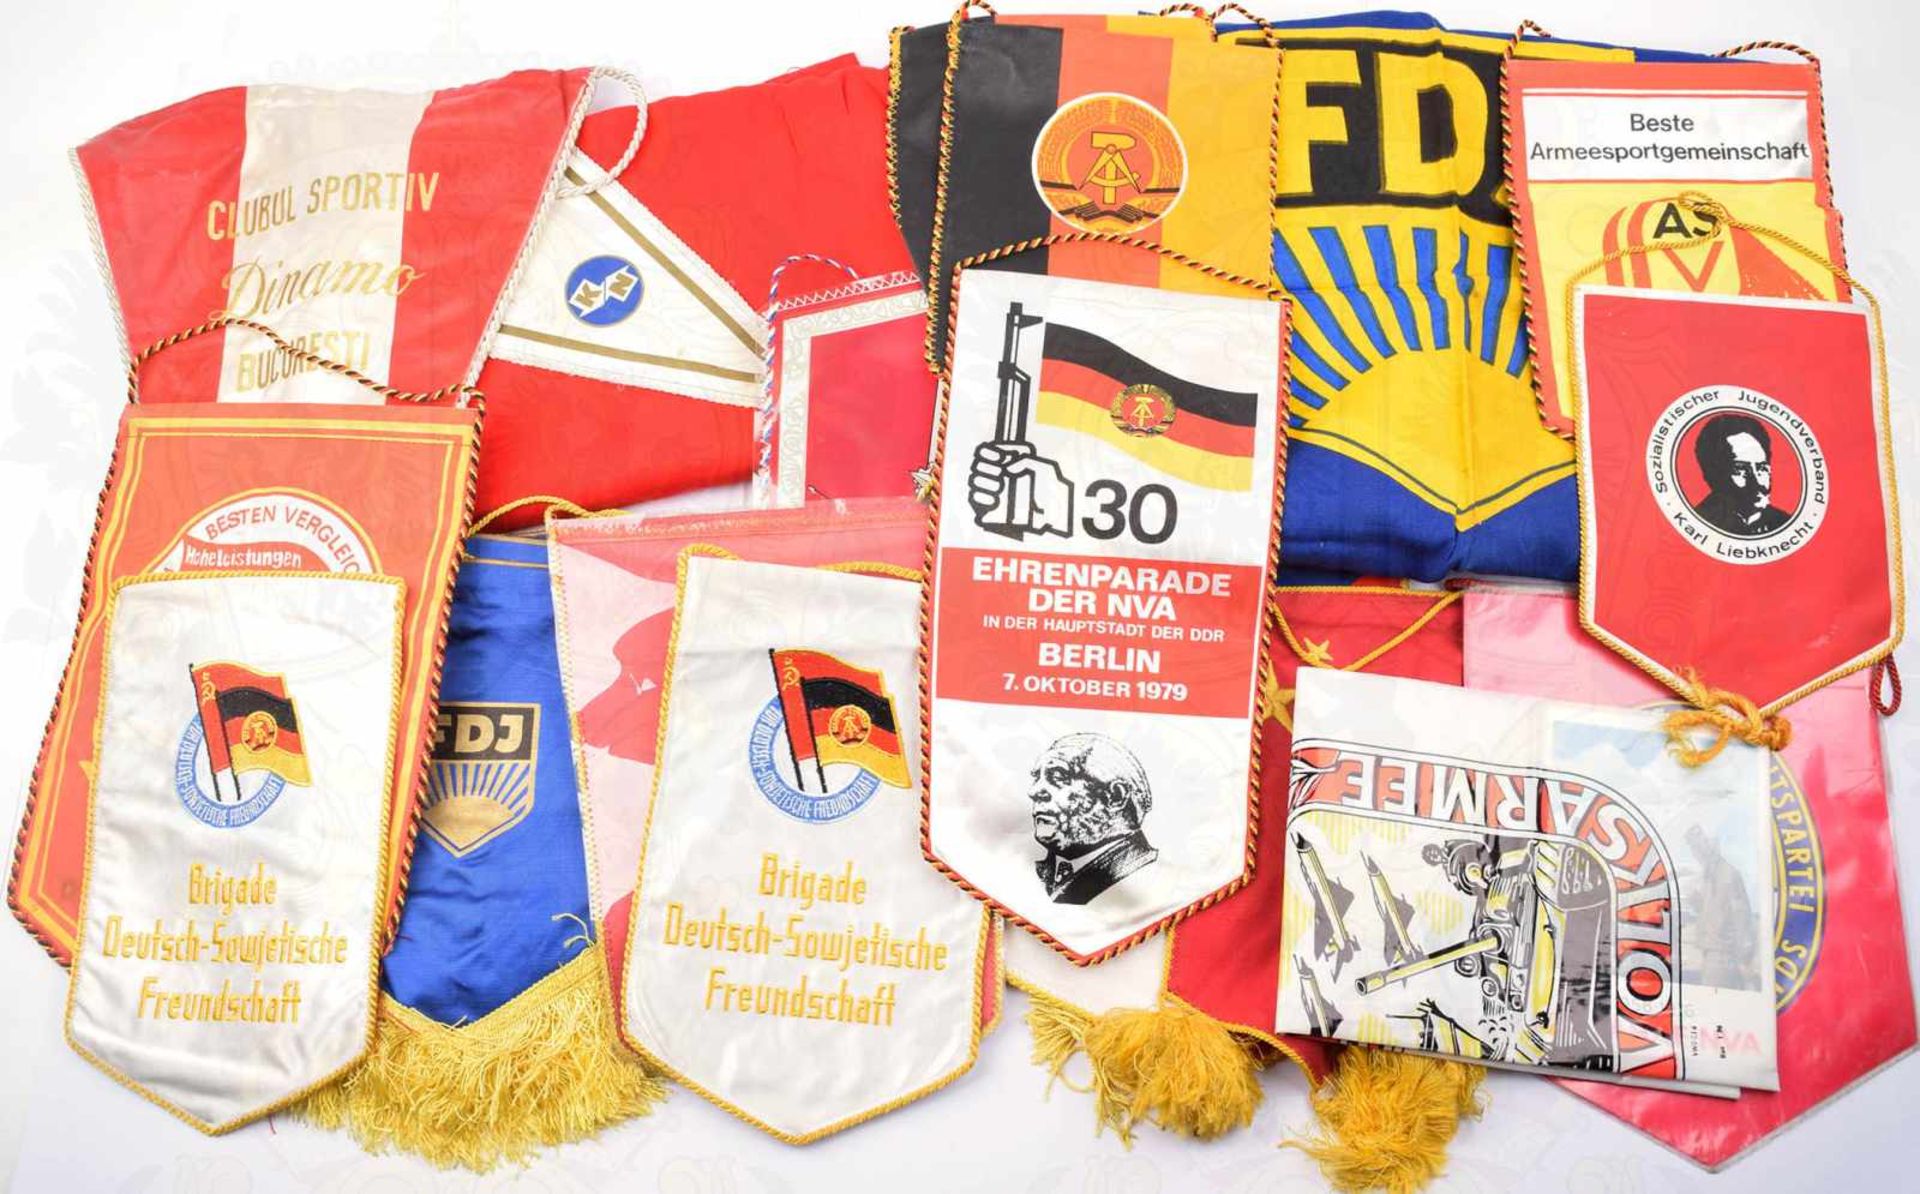 23 TISCHWIMPEL, Ehrenparade der NVA 1979, 25 Jahre NVA 1981, FDJ, ASV, DSF, rumän. Sportverein